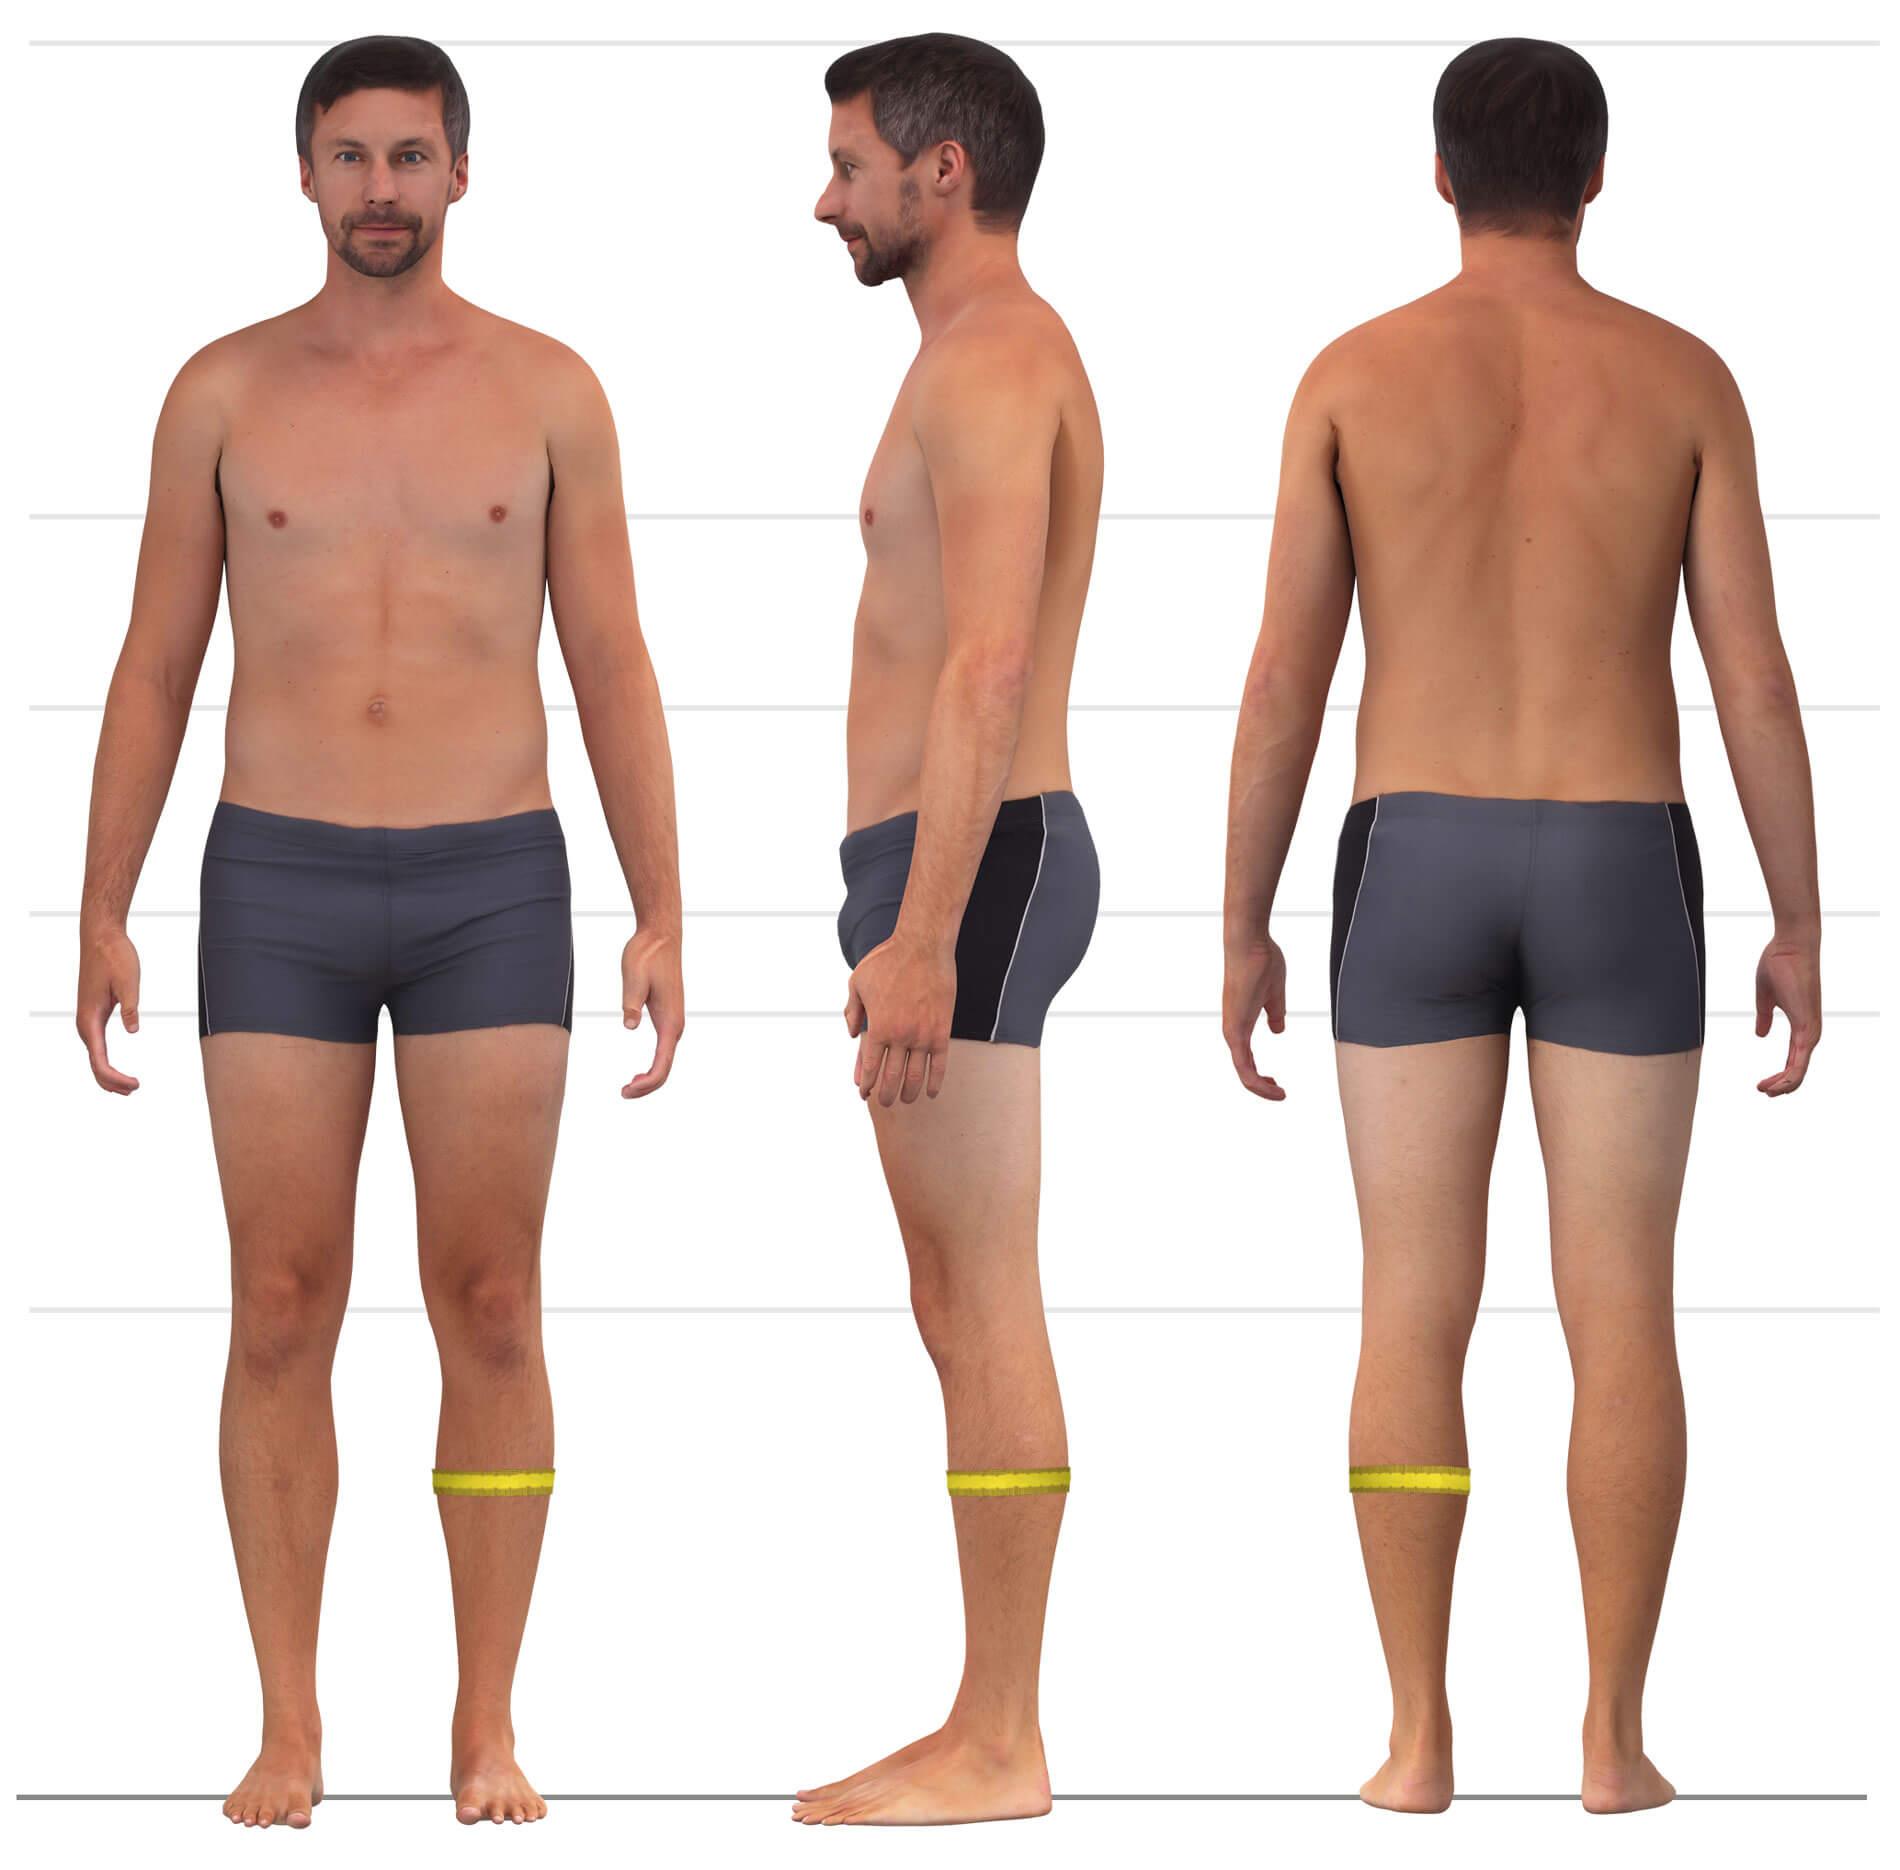 Das Bild zeigt das Maßnehmen des Wadenumfangs für Männerhosen.